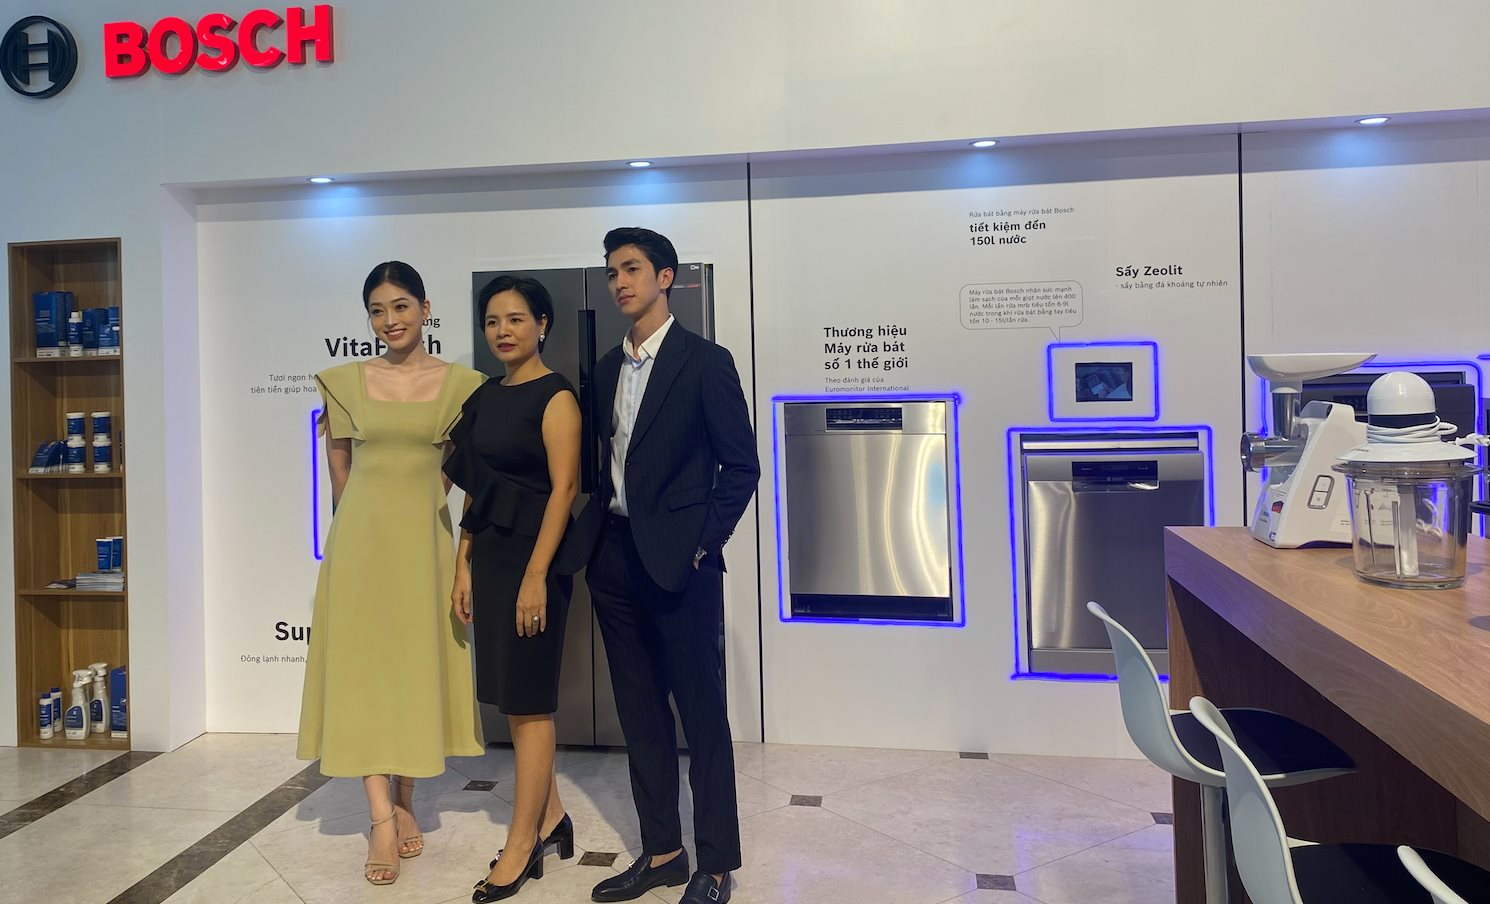 Sếp Bosch - tập đoàn gia dụng 137 năm tuổi: Chỉ 1% hộ gia đình Việt đang có máy rửa bát, nhưng 10 năm tới tỷ lệ này sẽ là 10-20% - Ảnh 1.